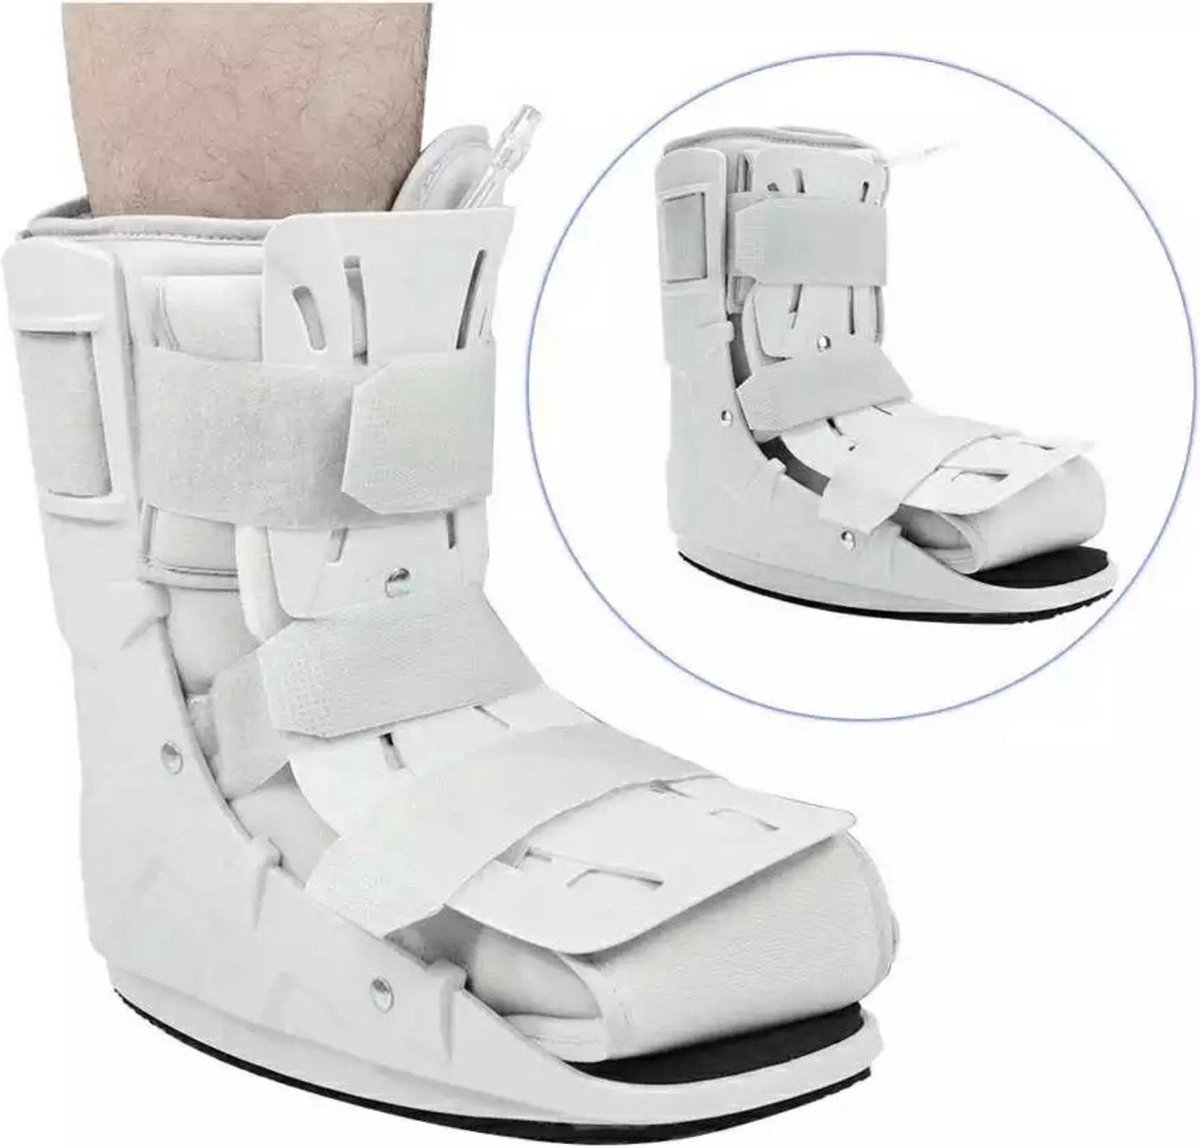 Ankle brace, voet brace, enkelbrace, enkel brace Maat M, boots, enkel ondersteuning, air walker, enkel brace, orthopedic enkelbrace.